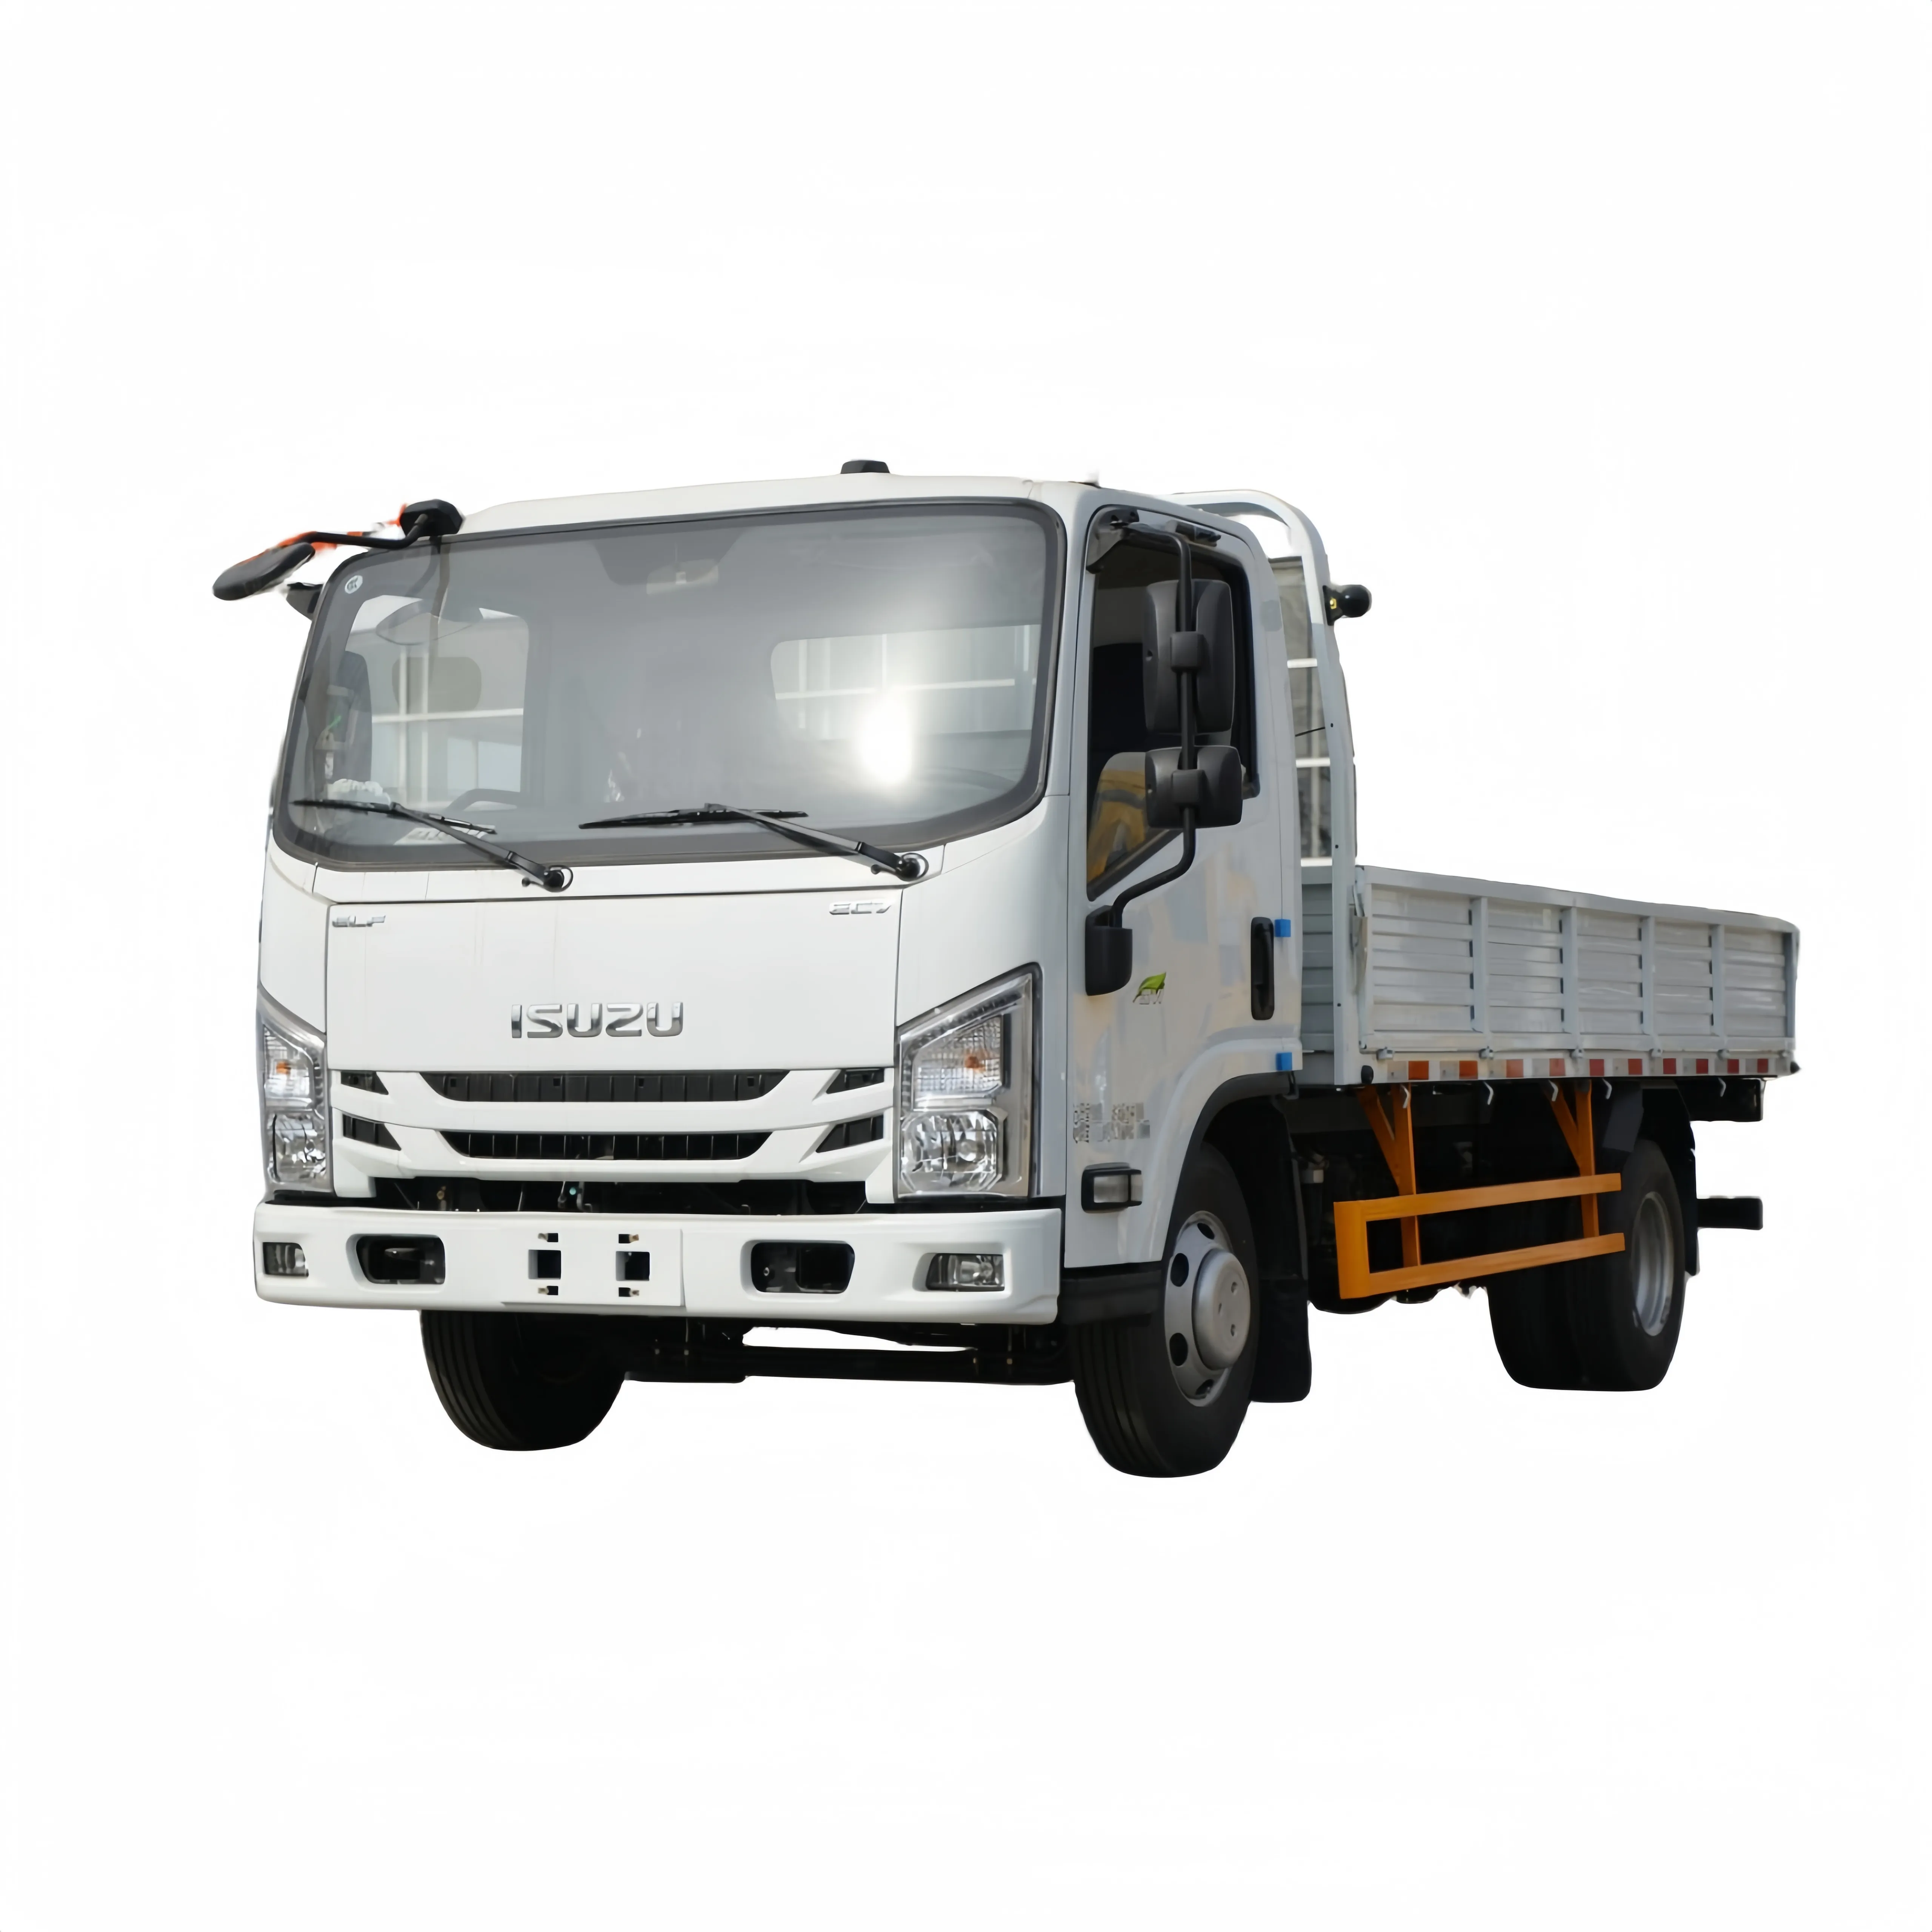 Fabrika kaynağı ISUZU kargo kamyon Isuzu 4200mm kutu boyutu dizel tipi